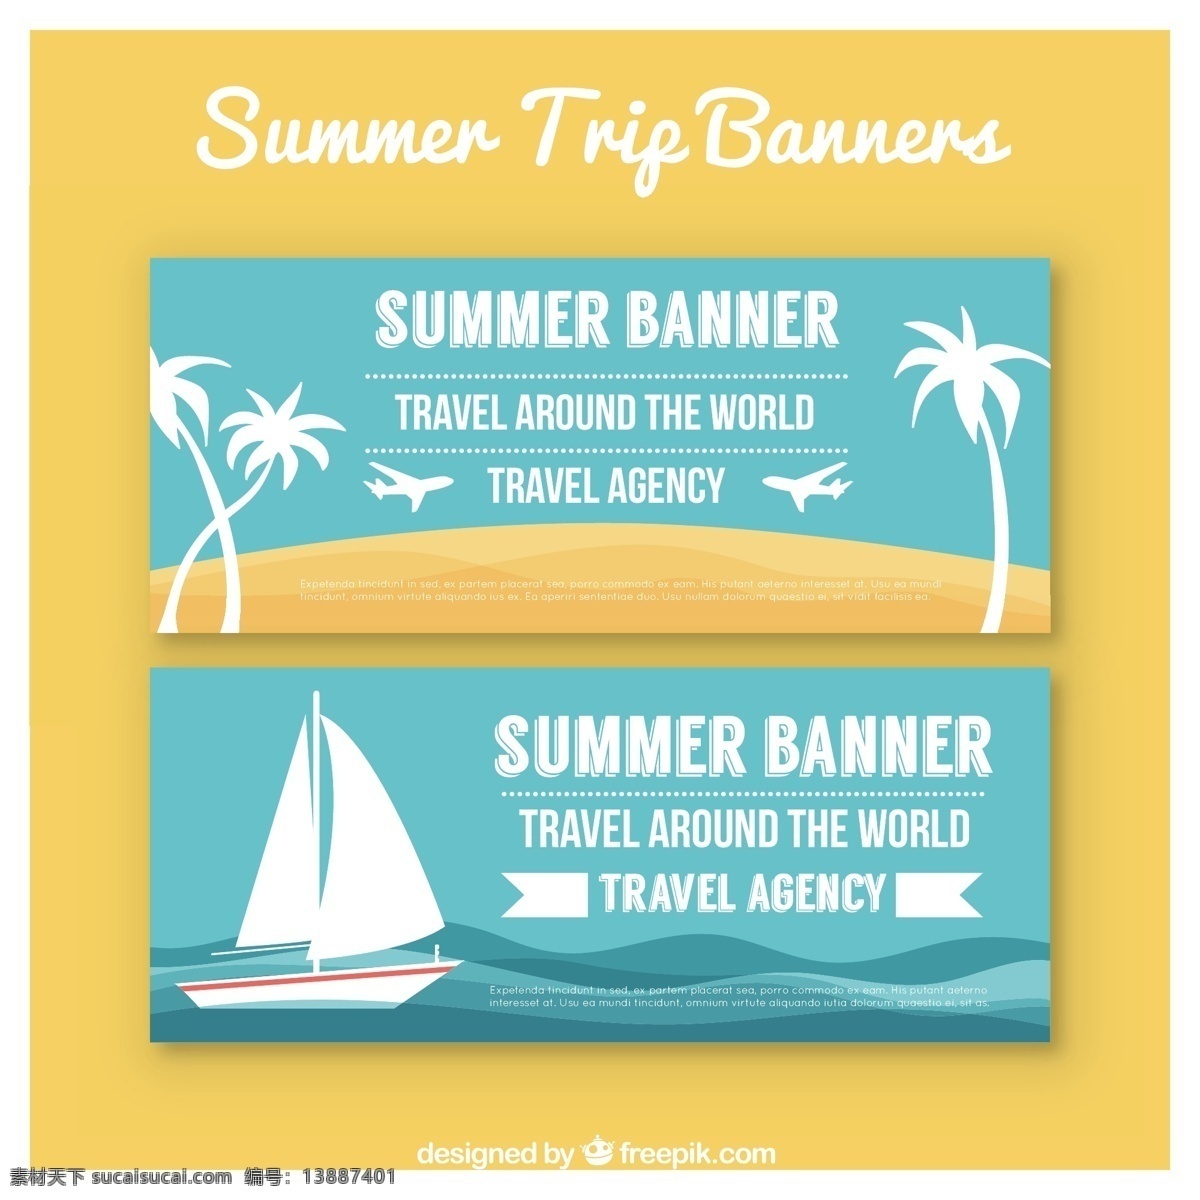 夏日 假期 蓝色 旗帜 夏季 旅游 太阳 海滩 世界 海 横幅 船 假日 树木 棕榈 度假 海岛 旅行 夏季海滩 黄色